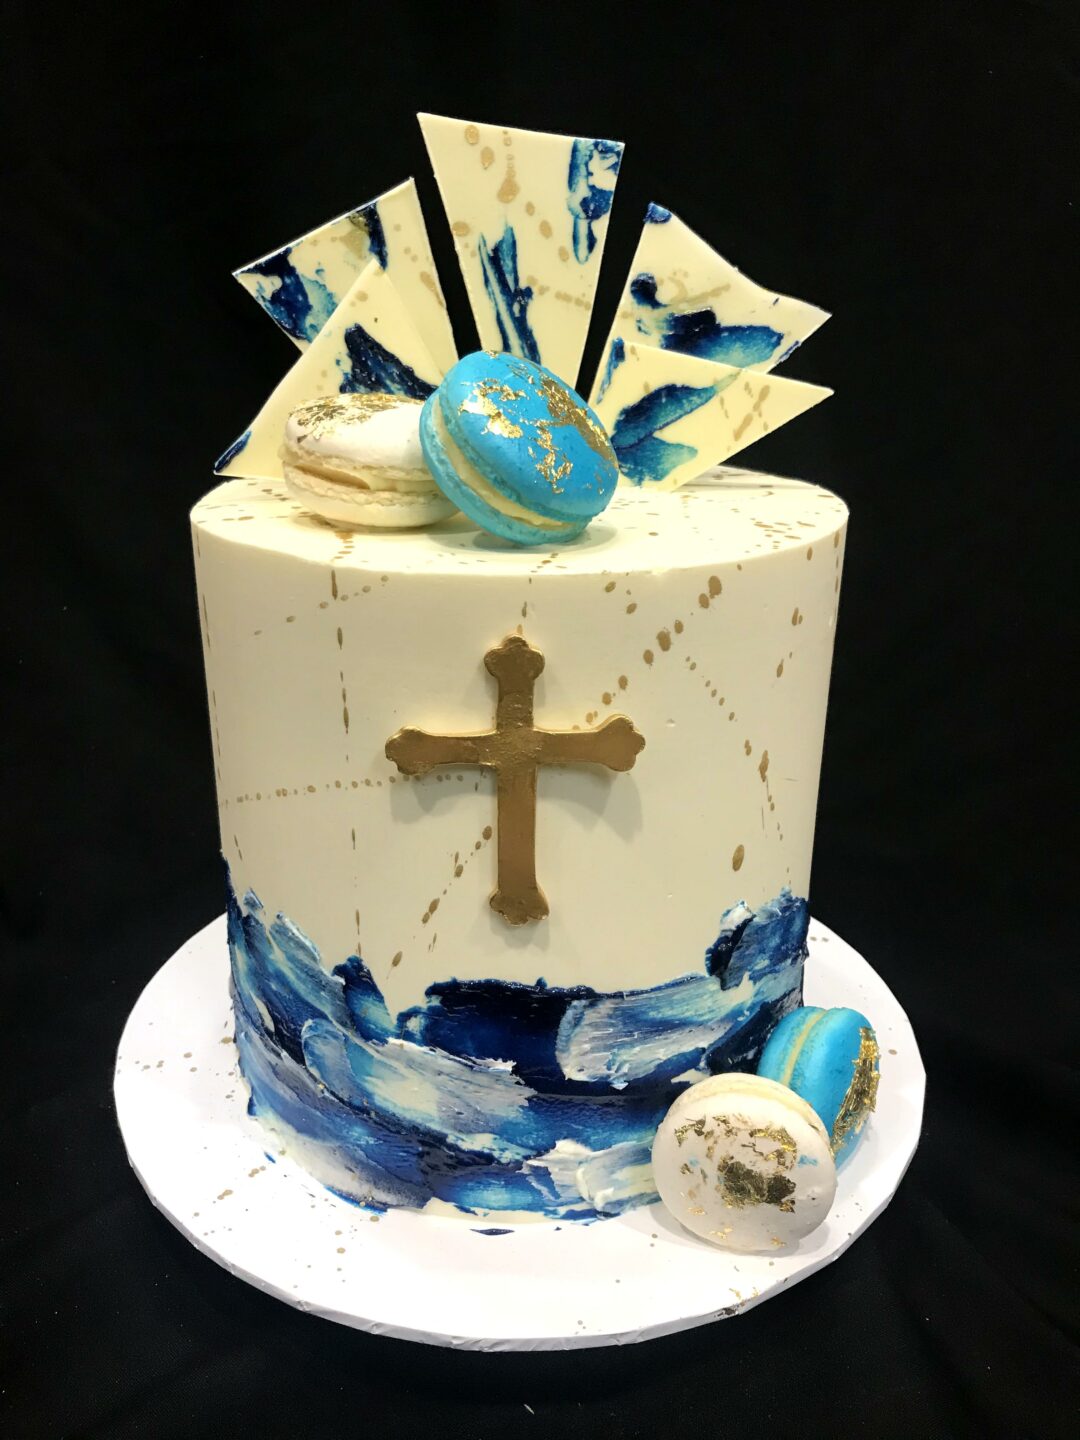 Lyons Den Cakes - Birthdays & Celebrations